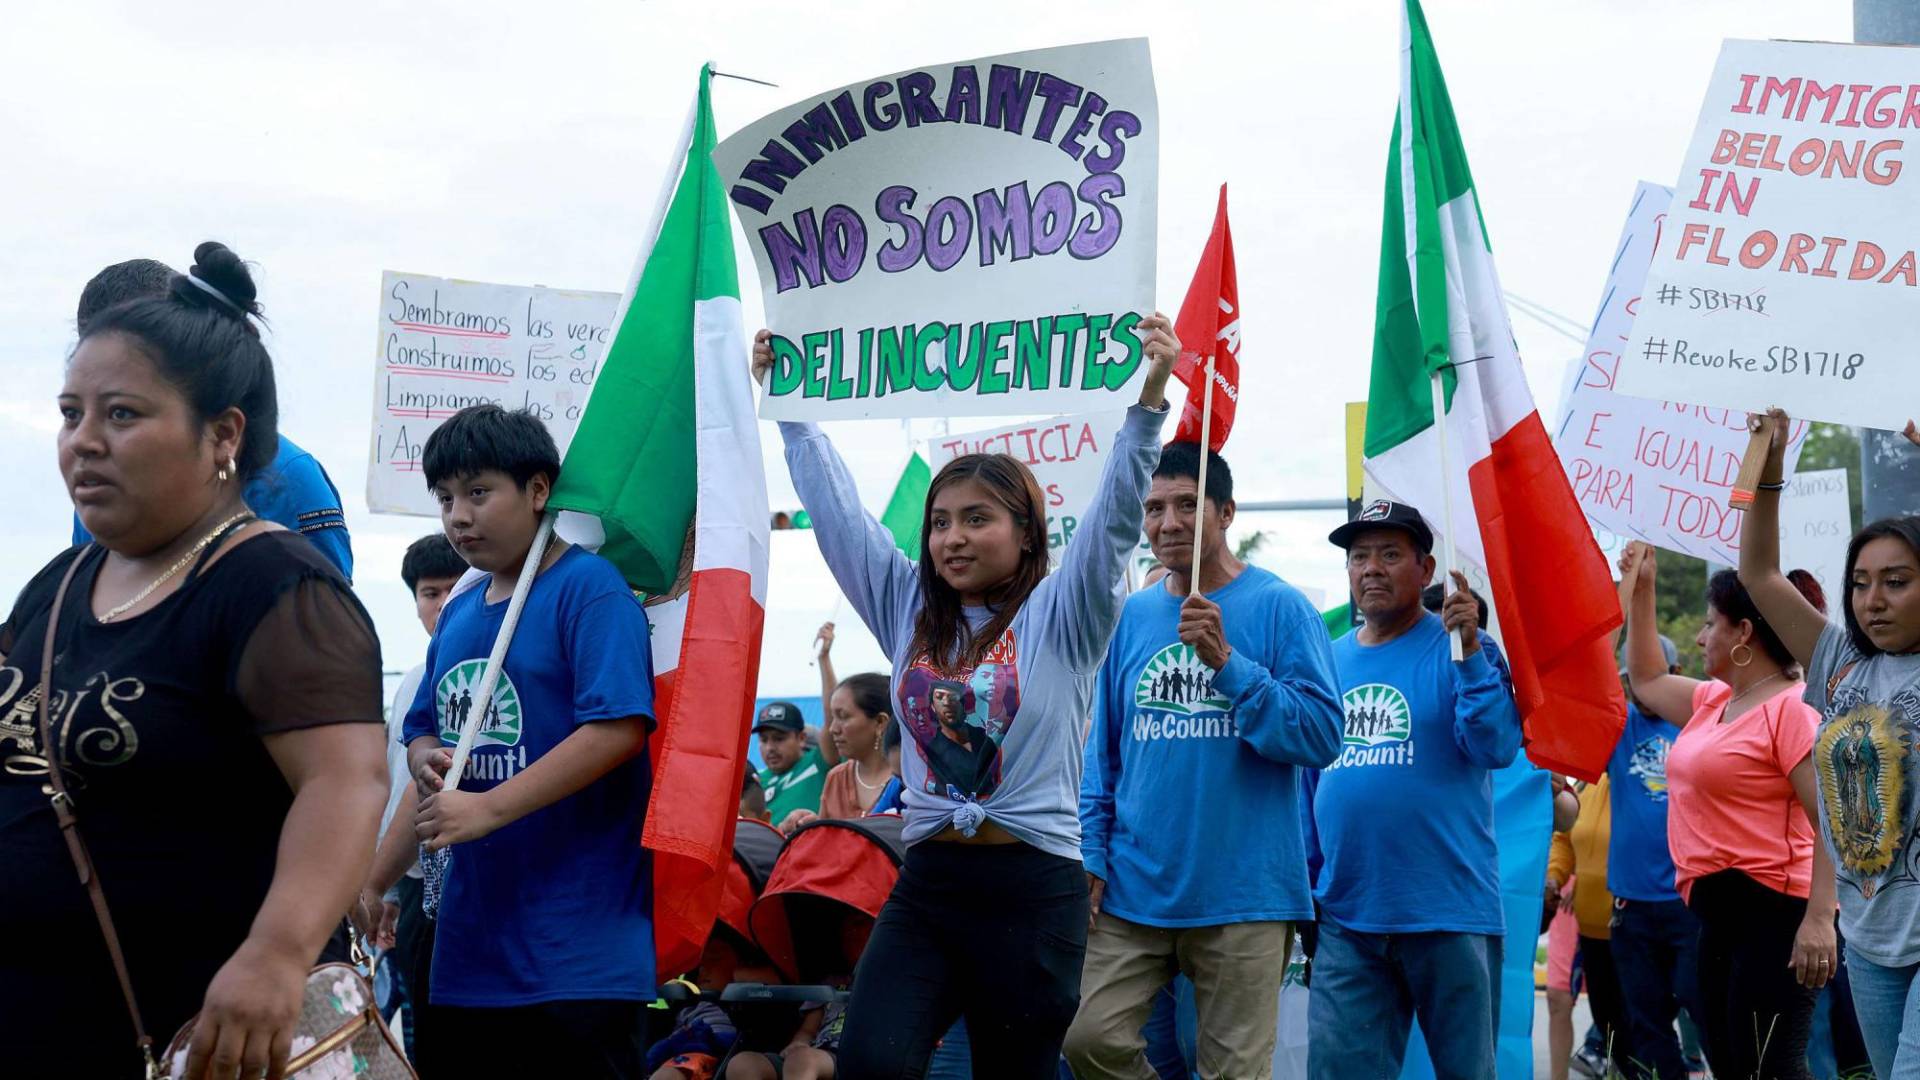 $!Las organizaciones promigrantes hacen recomendaciones a los hondureños que puedan enfrentarse a la nueva ley.